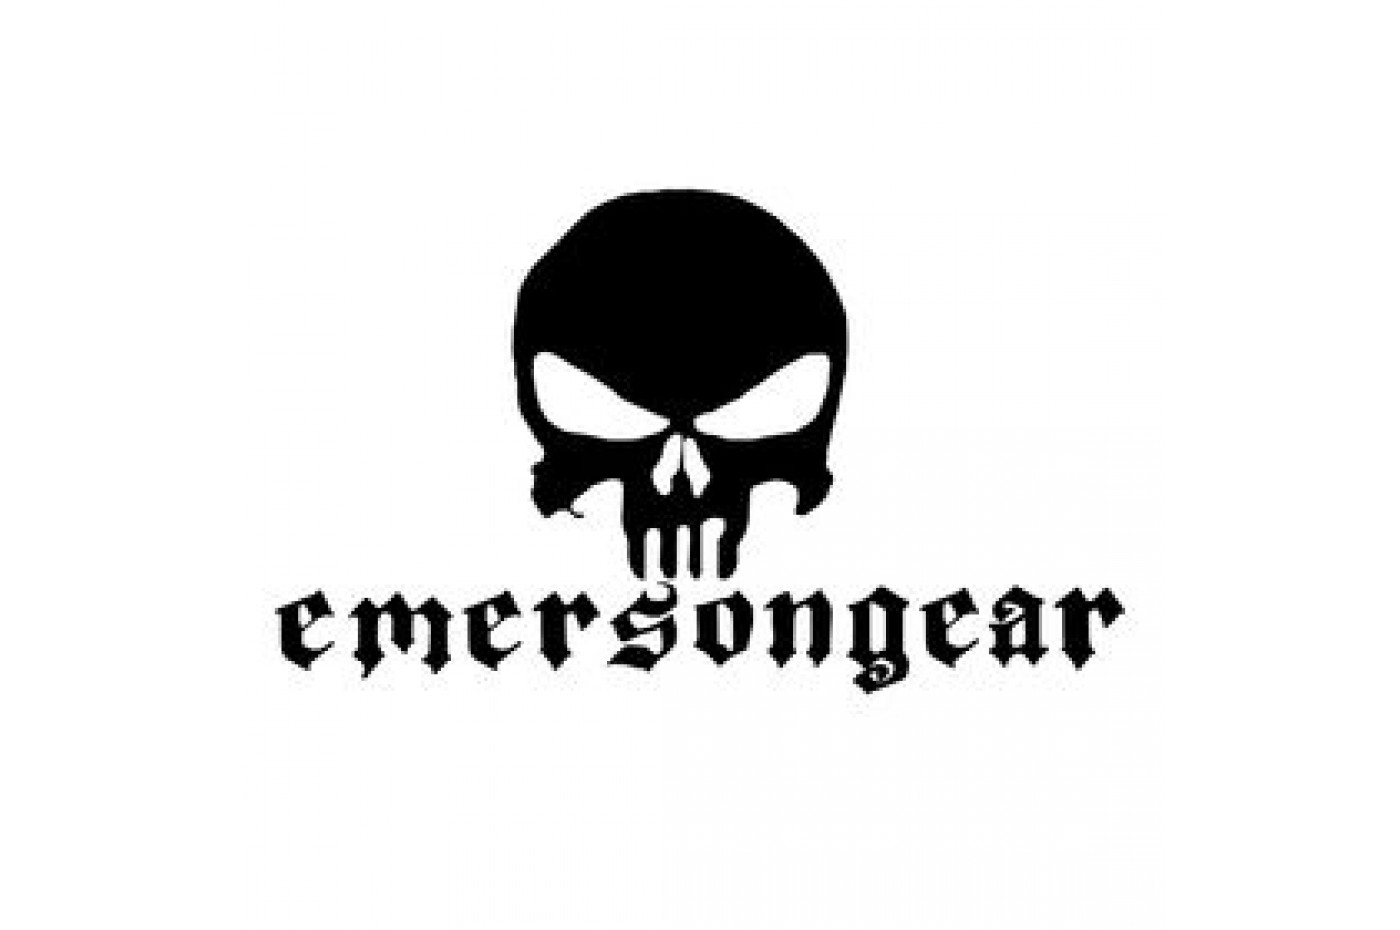 Emerson Gear